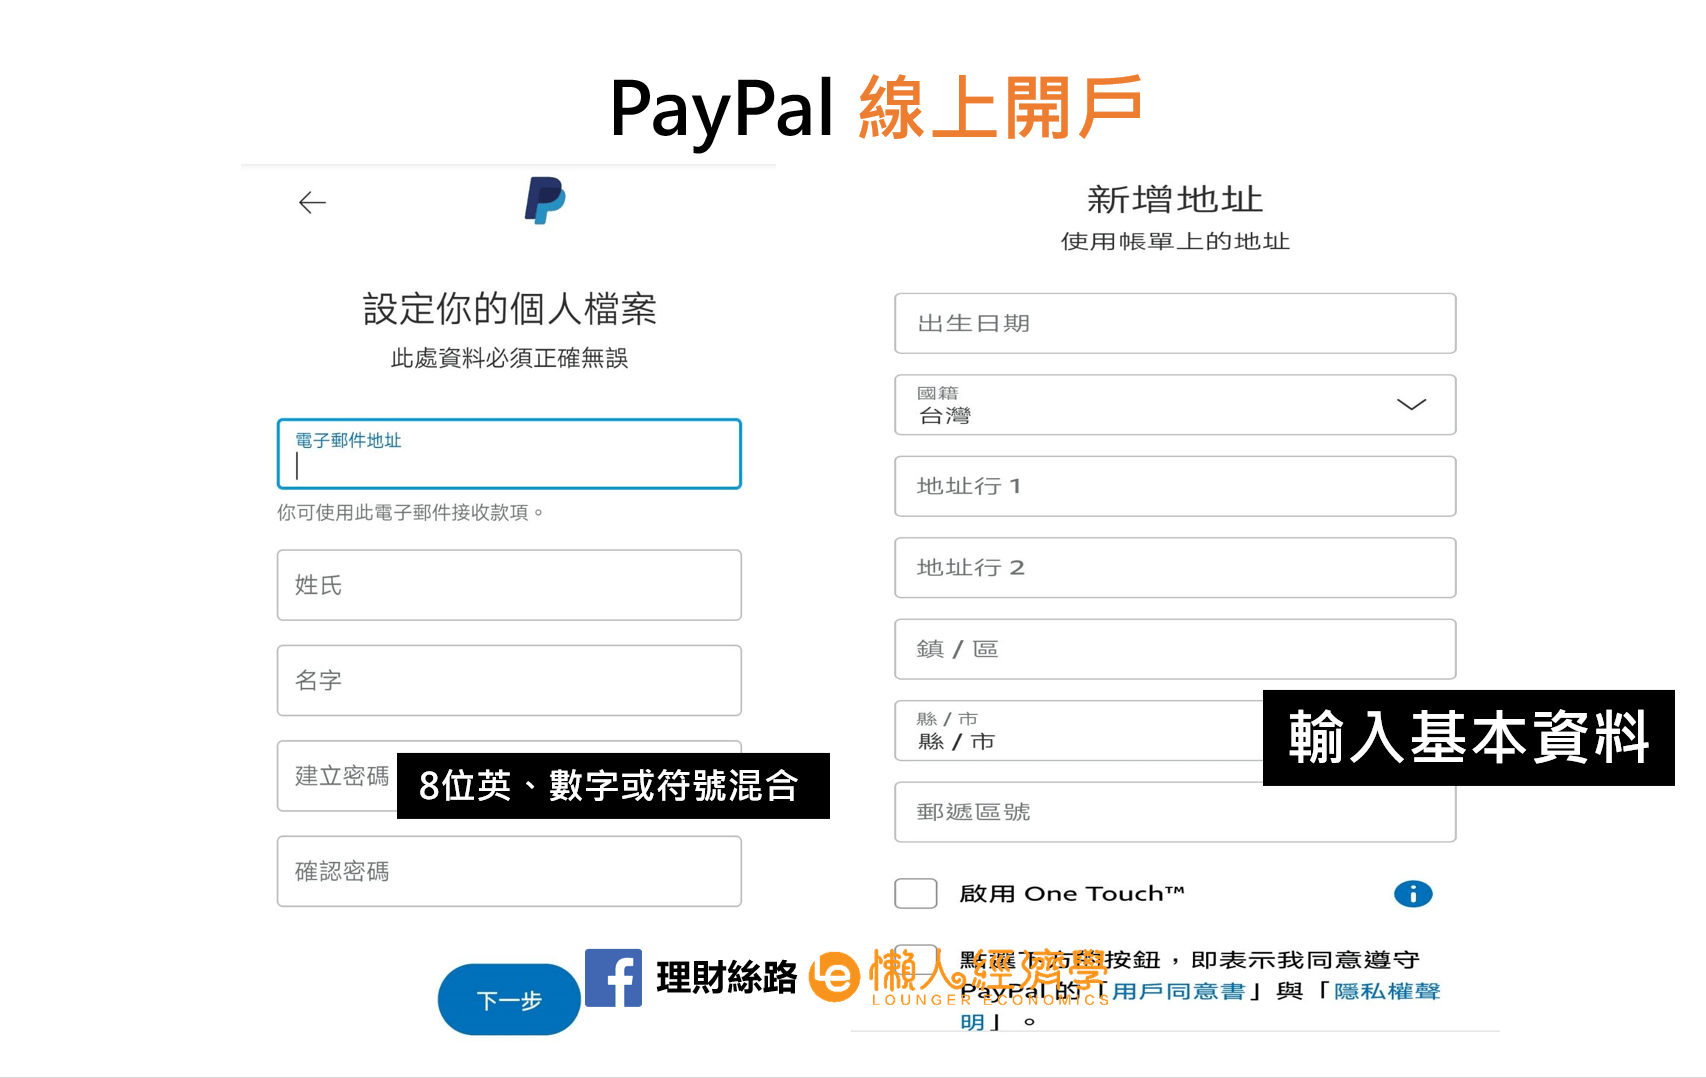 PayPal輸入基本資料